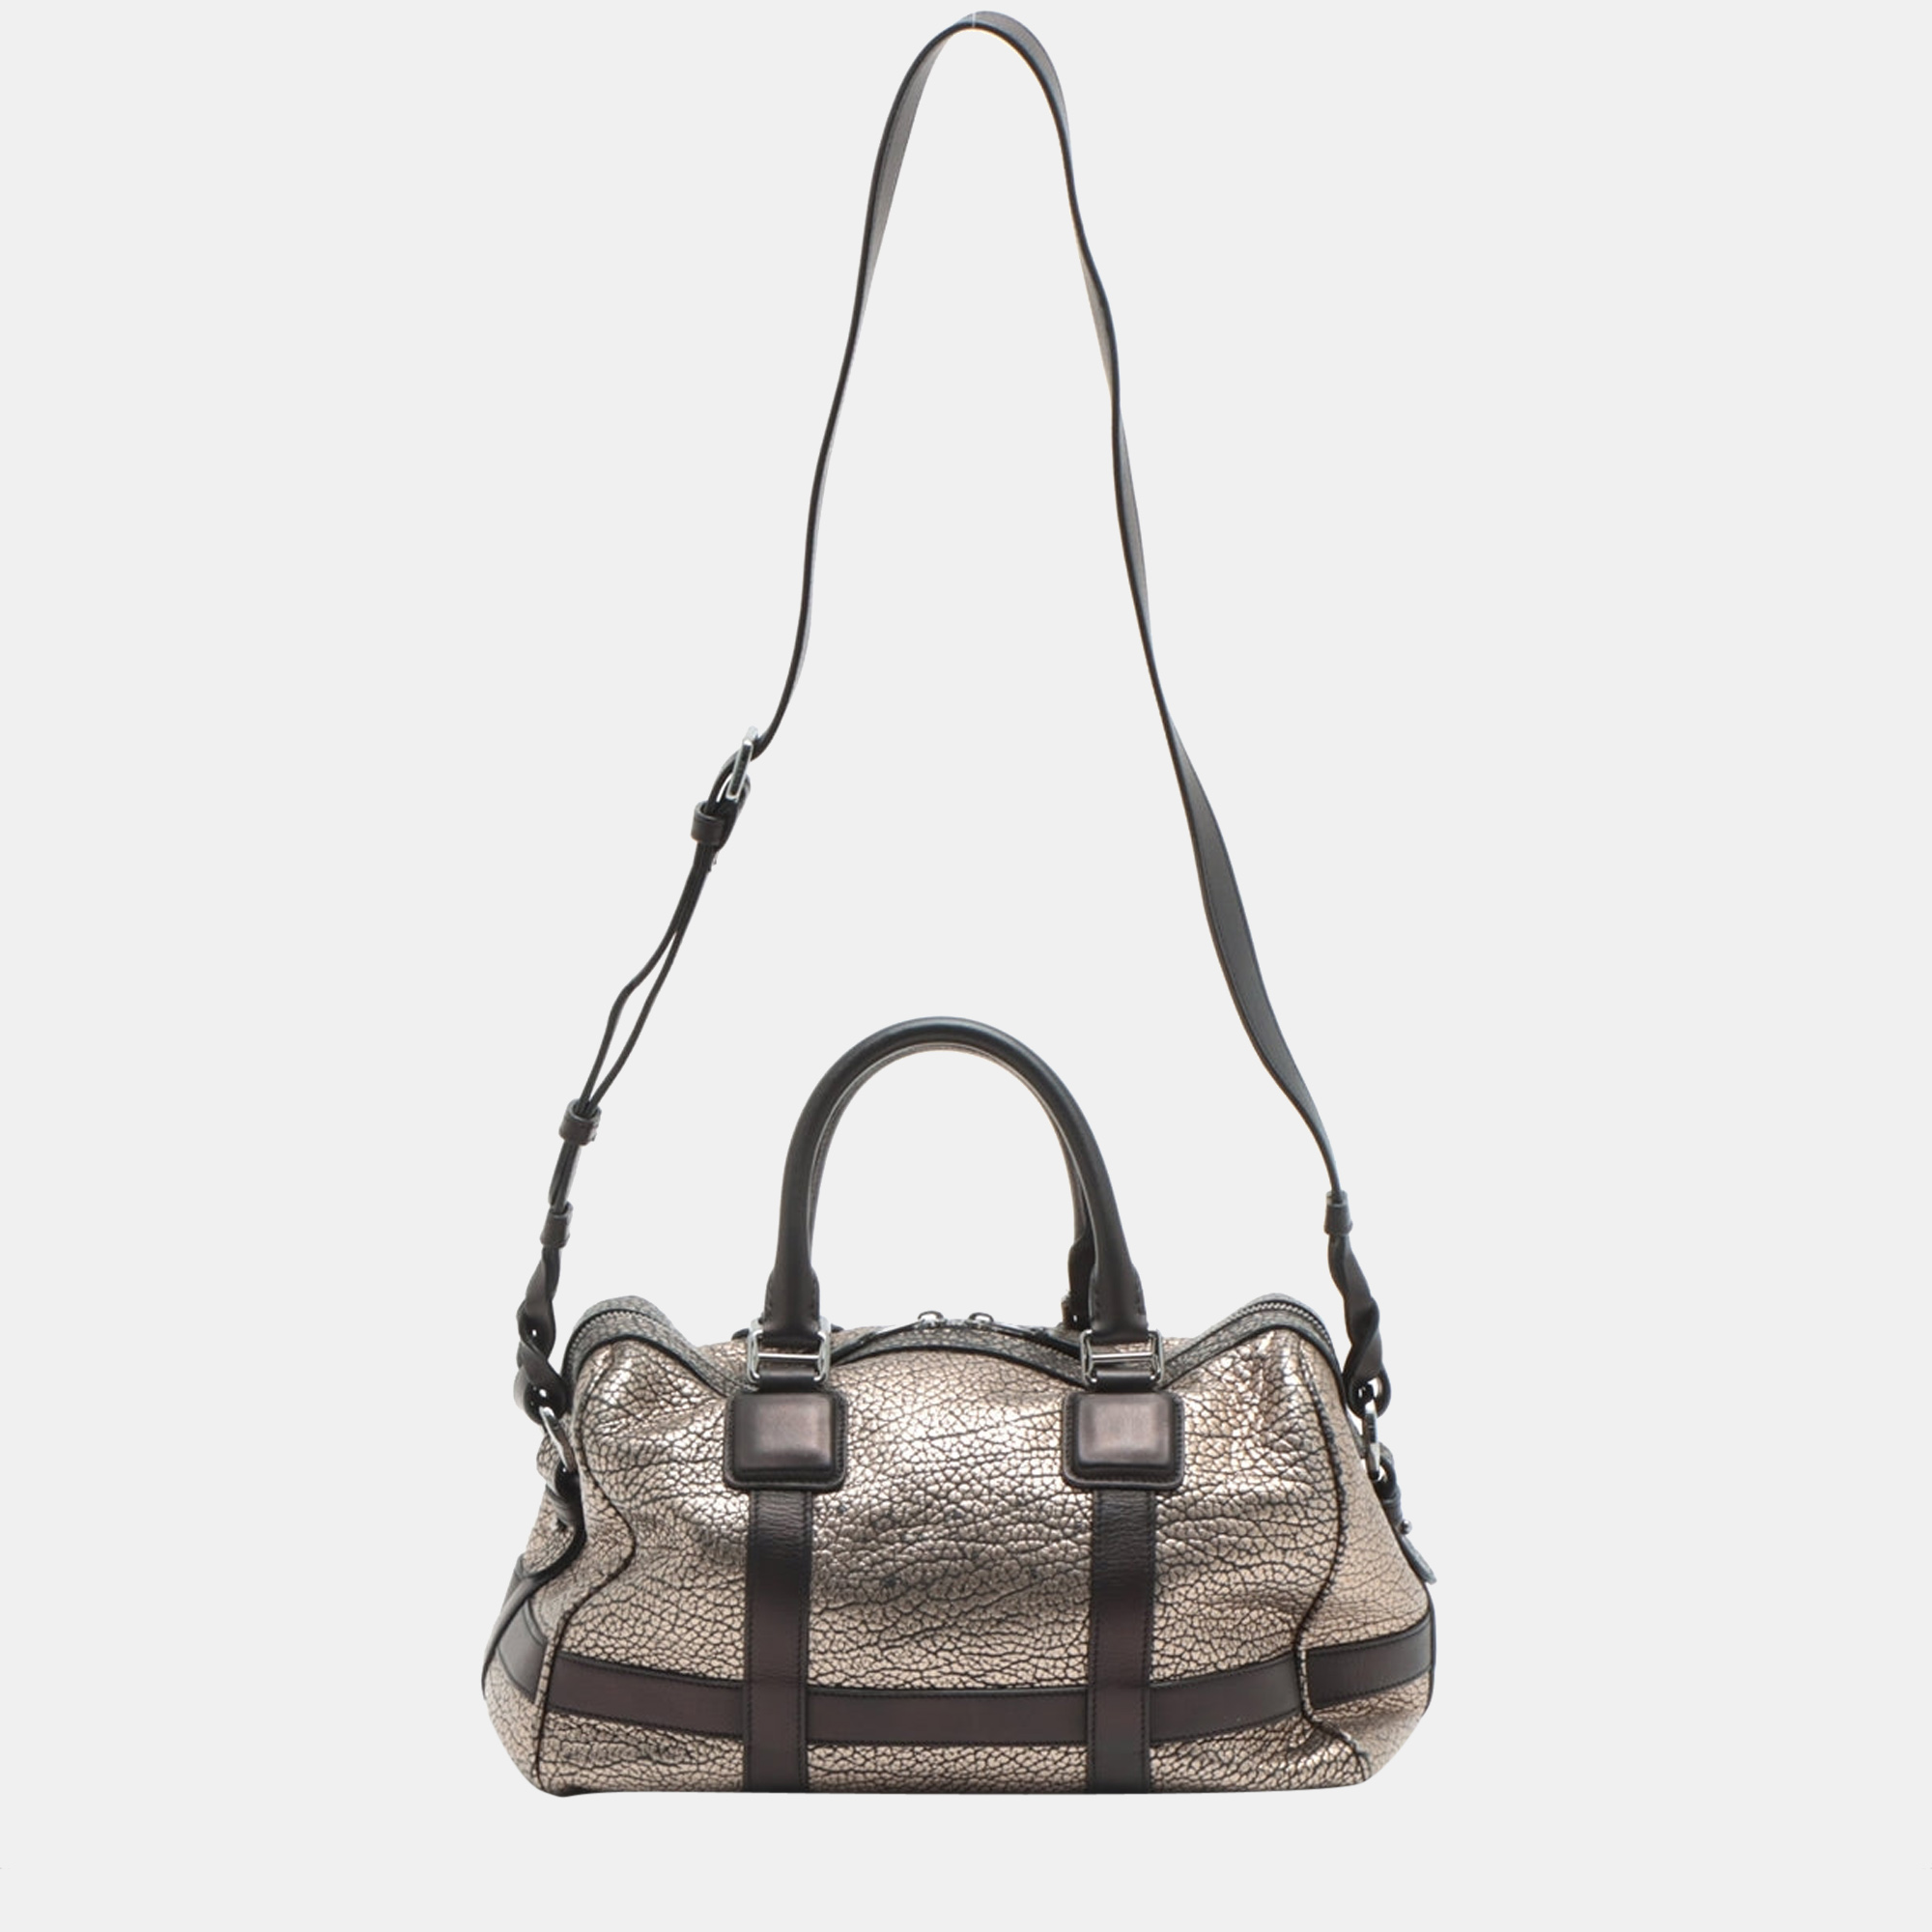 

Loewe Leather 2way handbag Black/Silver